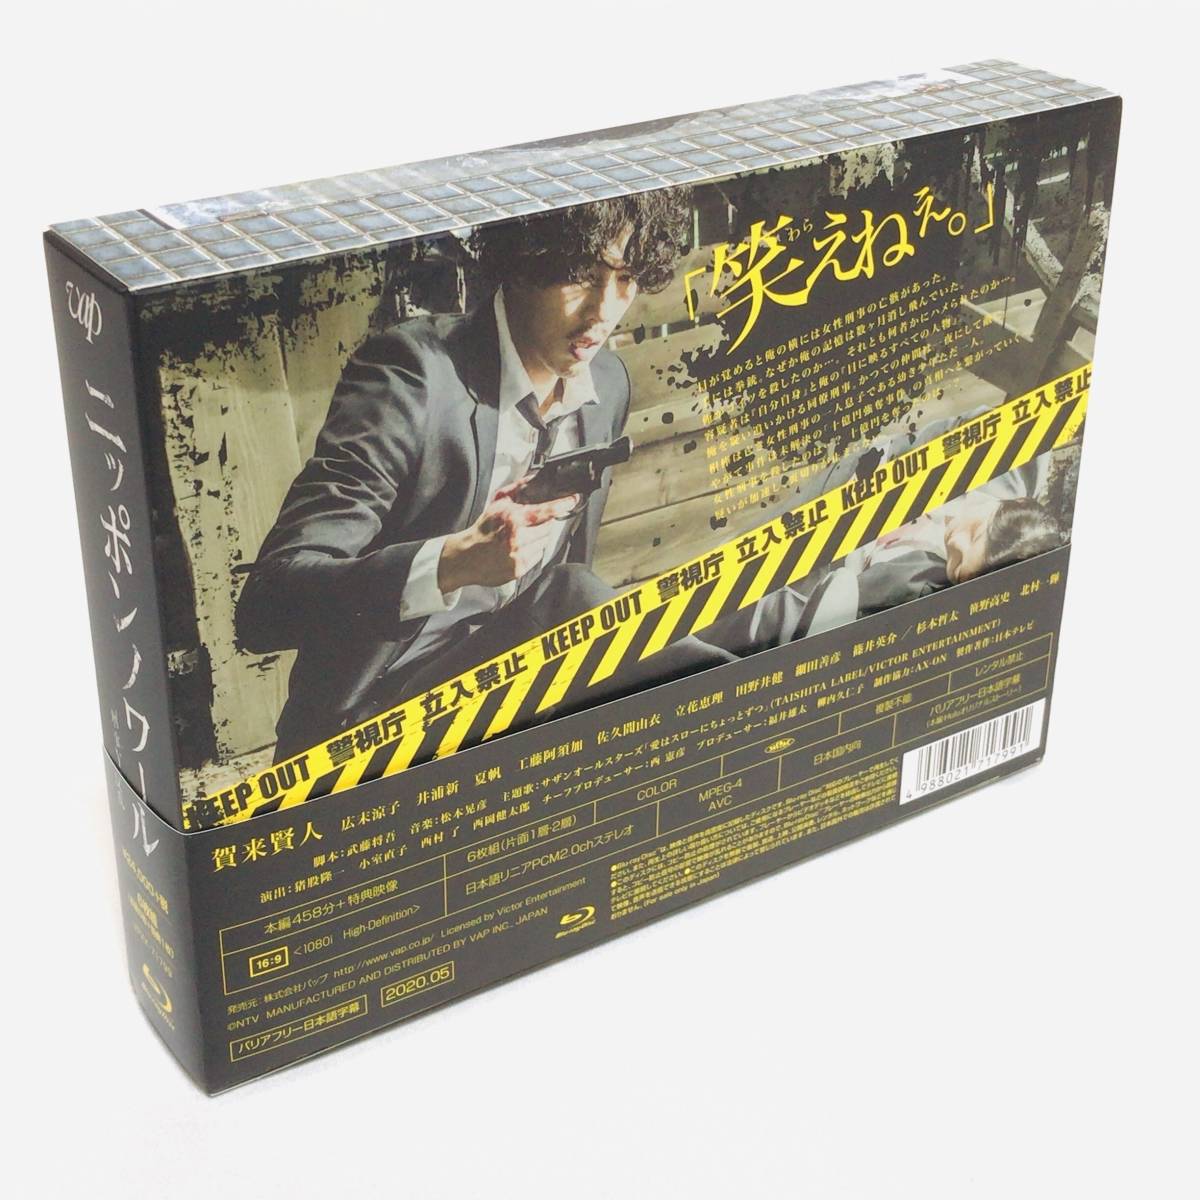 ニッポンノワール－刑事Yの反乱－[DVD-BOX](品) www.etnasuite.com